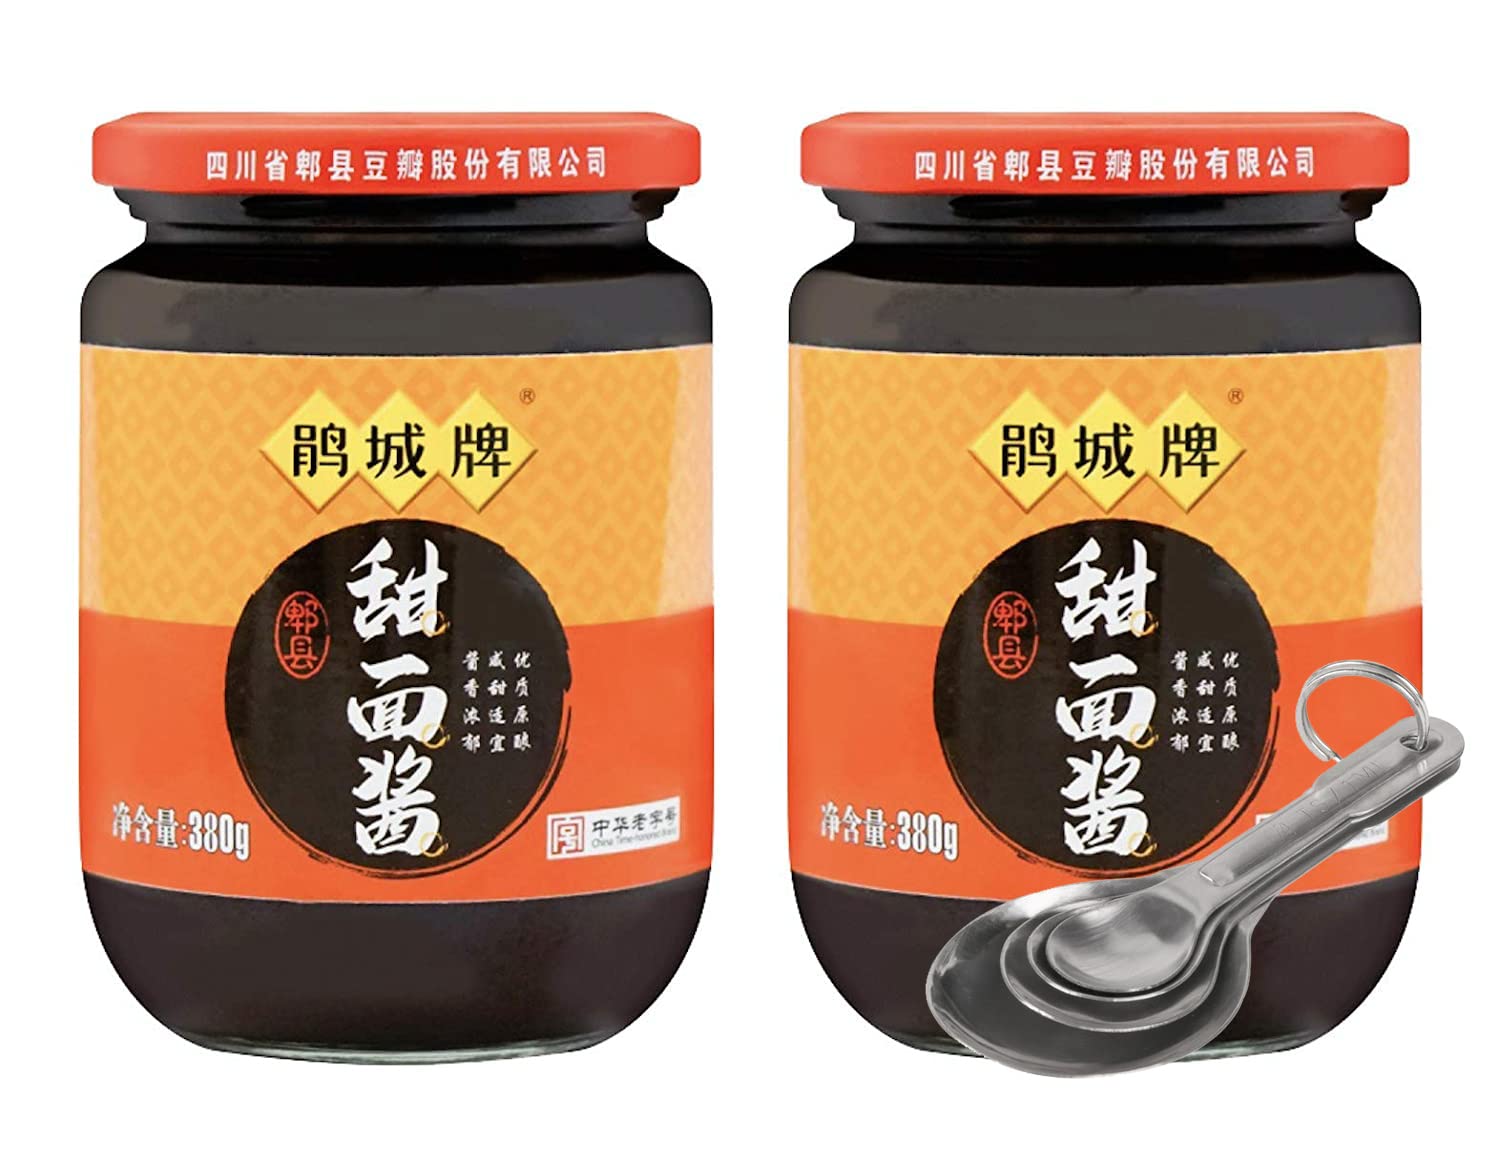 Tenmenjan Sweet Soybean Paste Seasoning / Marinade 鹃城牌 四川郫县 甜面酱, Sweet Flour Paste - 380 Gram (PACK OF 2)